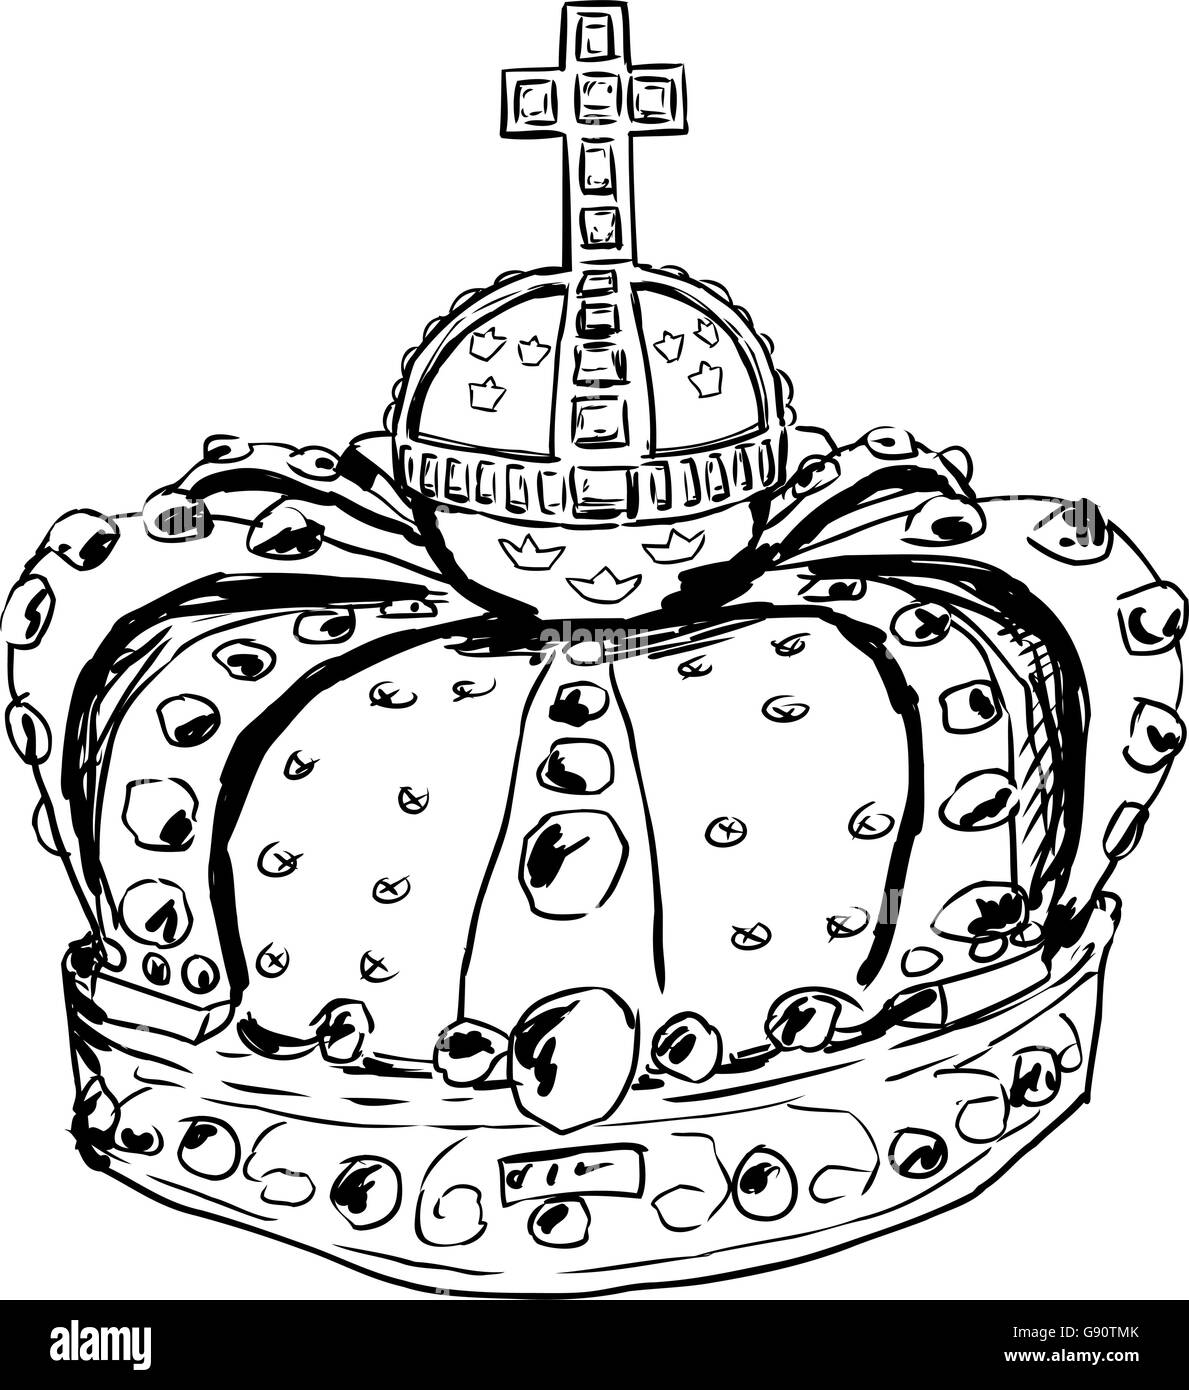 Croquis de couronne royale portés par la Reine suédoise Lovisa Ulrika dans le 18e siècle Illustration de Vecteur